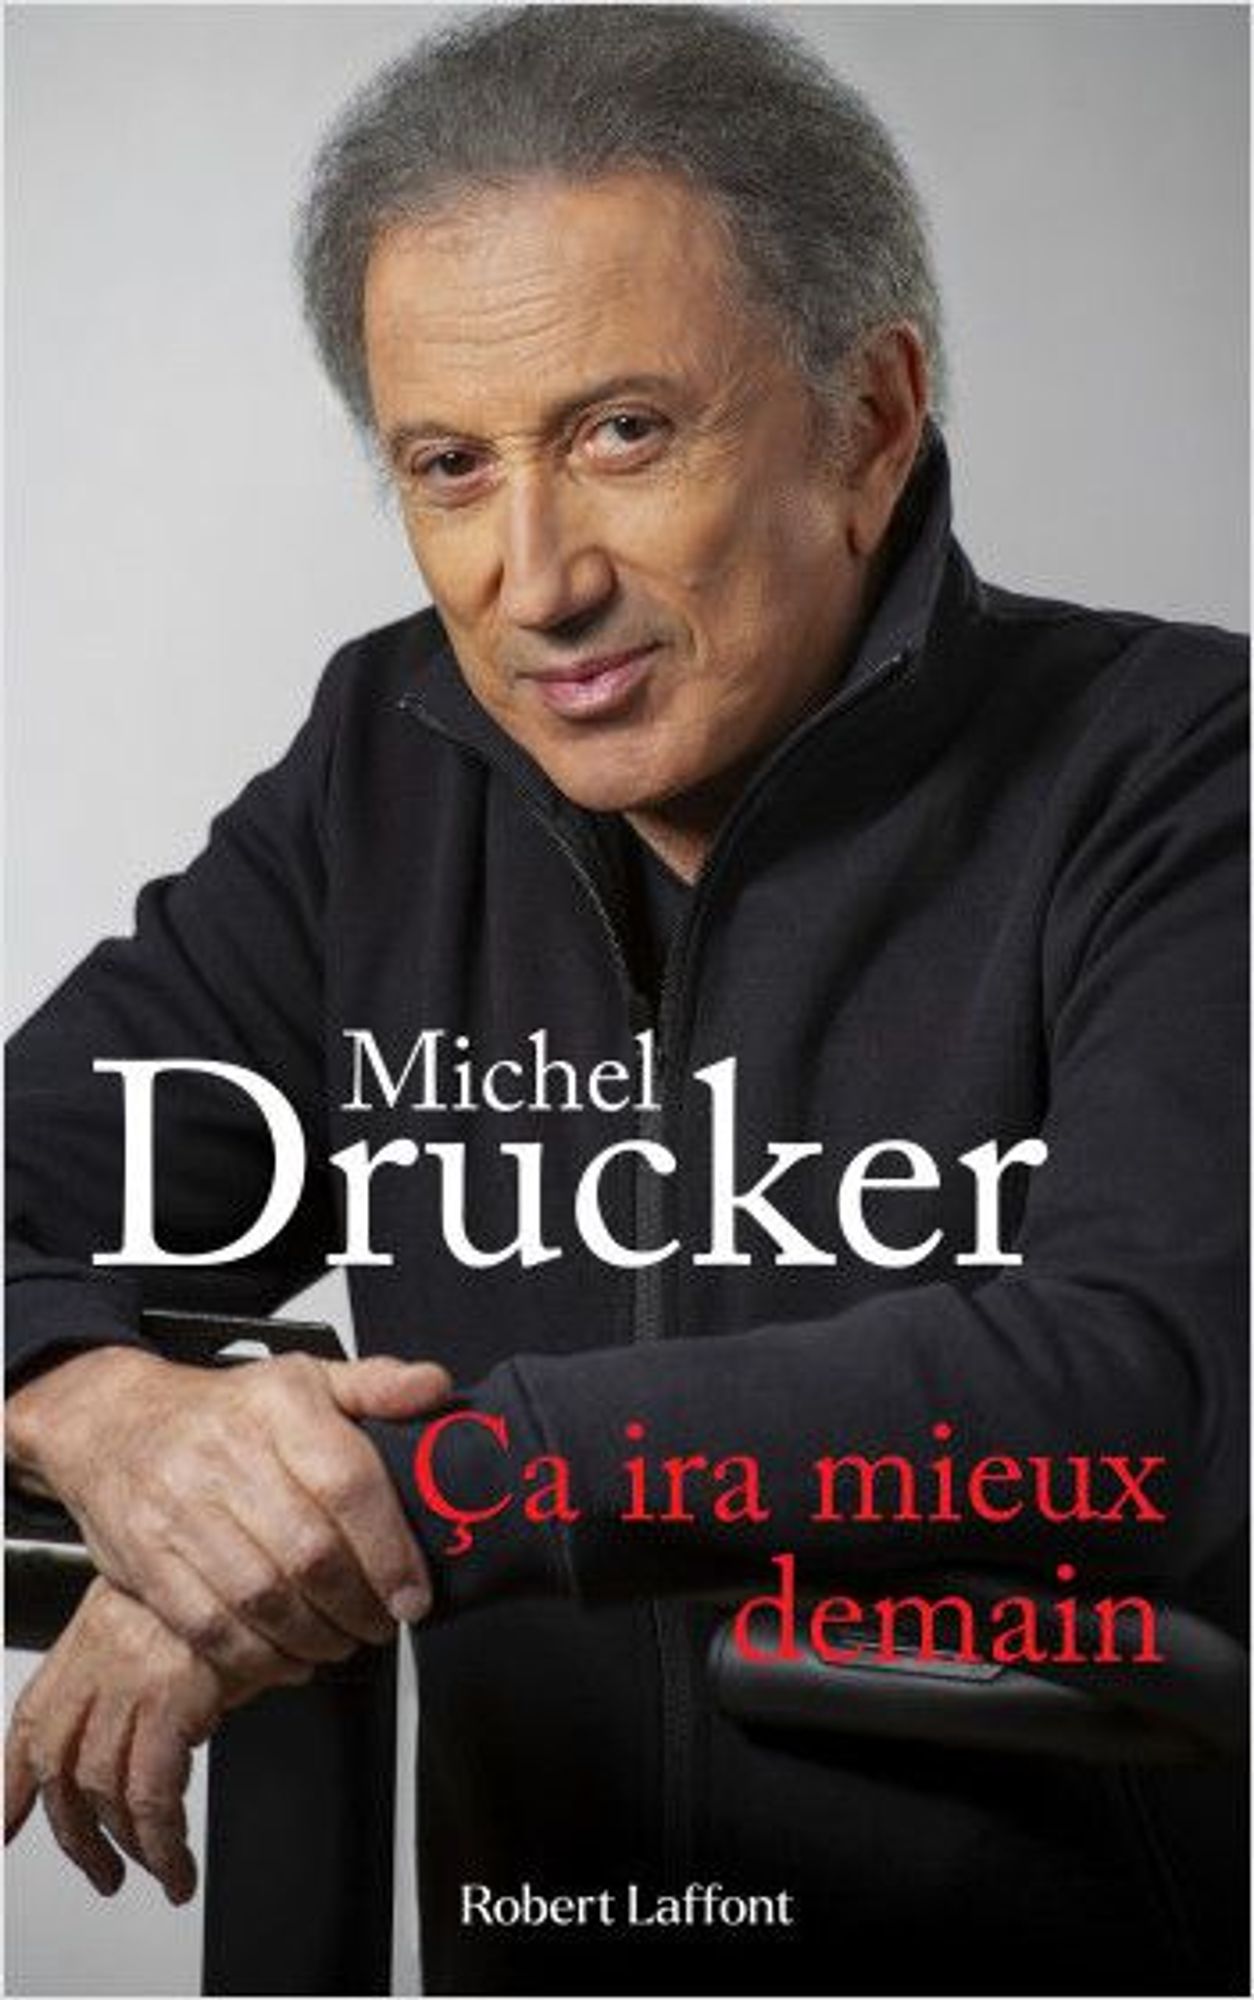 Michel Drucker Sur Radio VFM